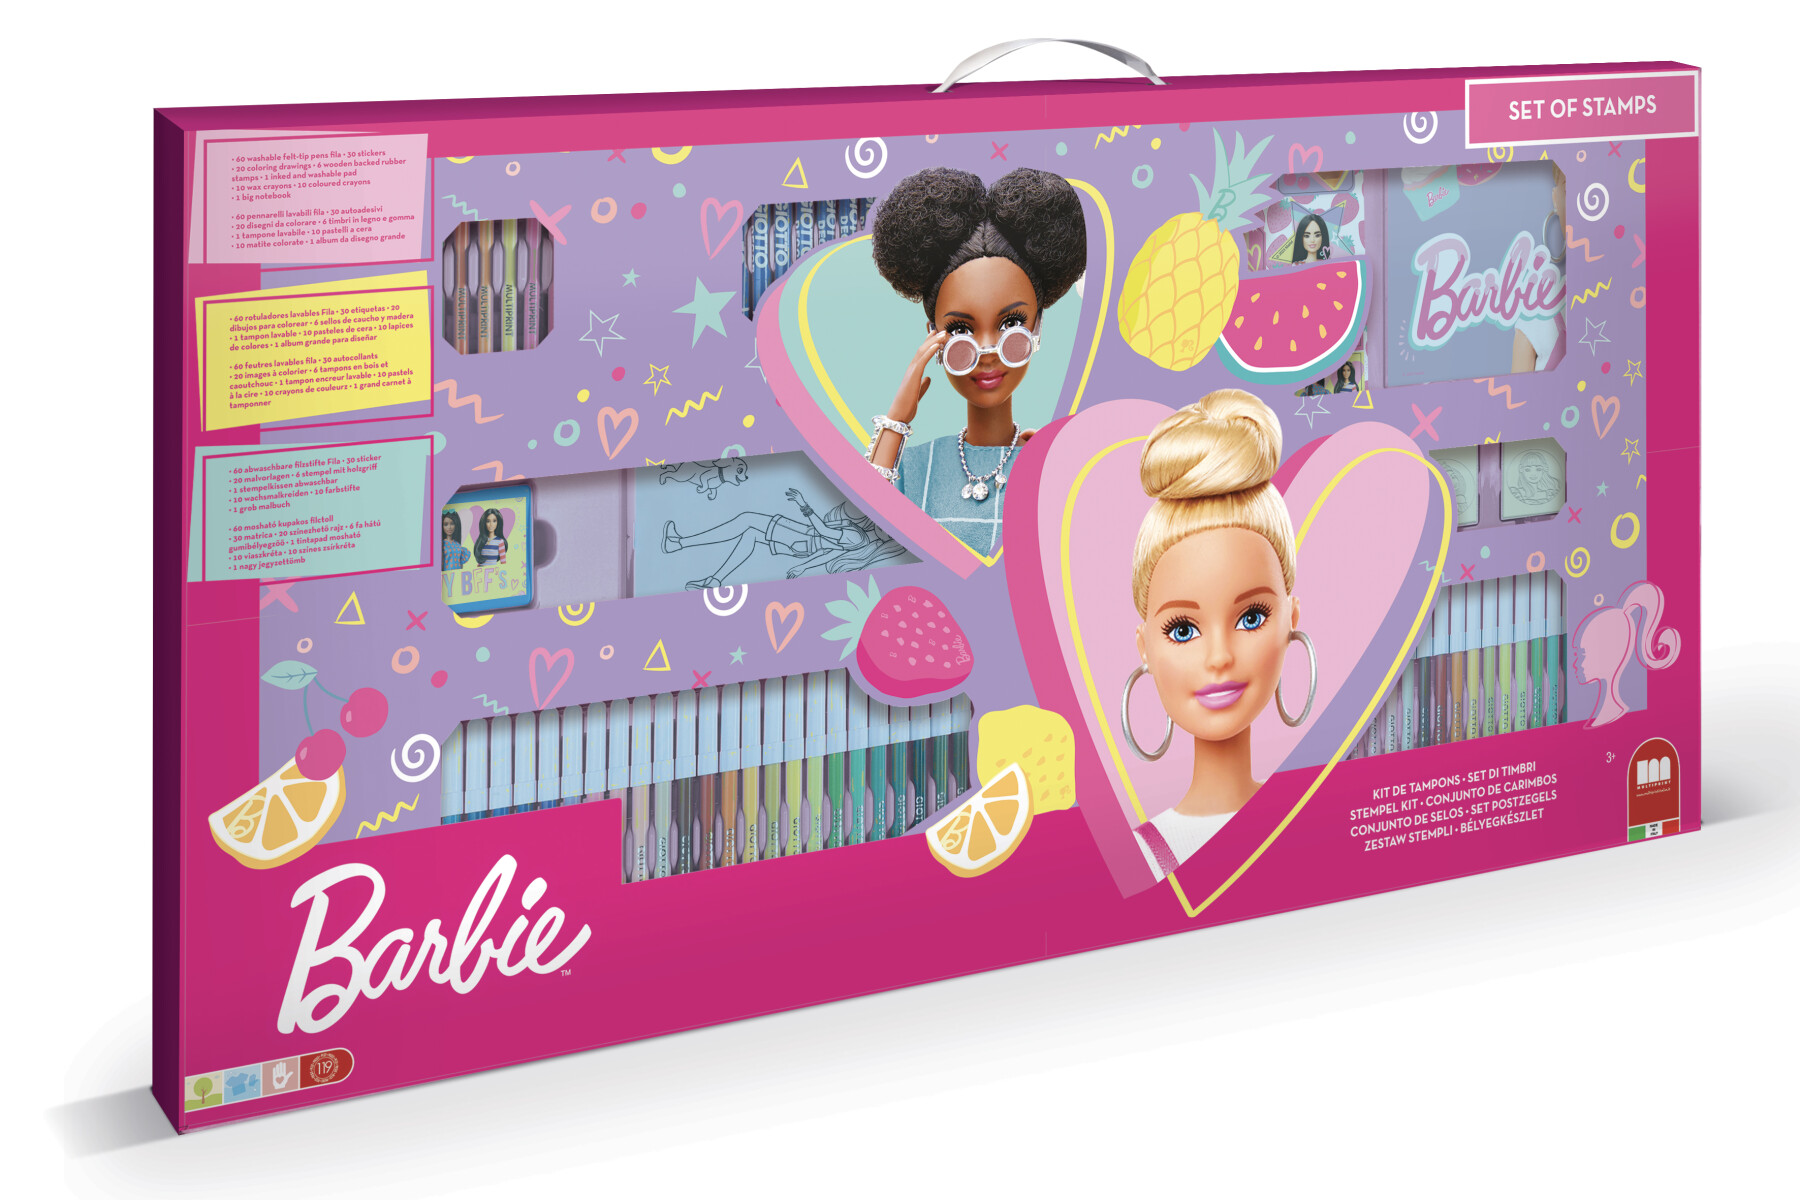 Mega maxi coloring barbie. set creativo con timbri, colori, adesivi e tantissimo divertimento - Barbie